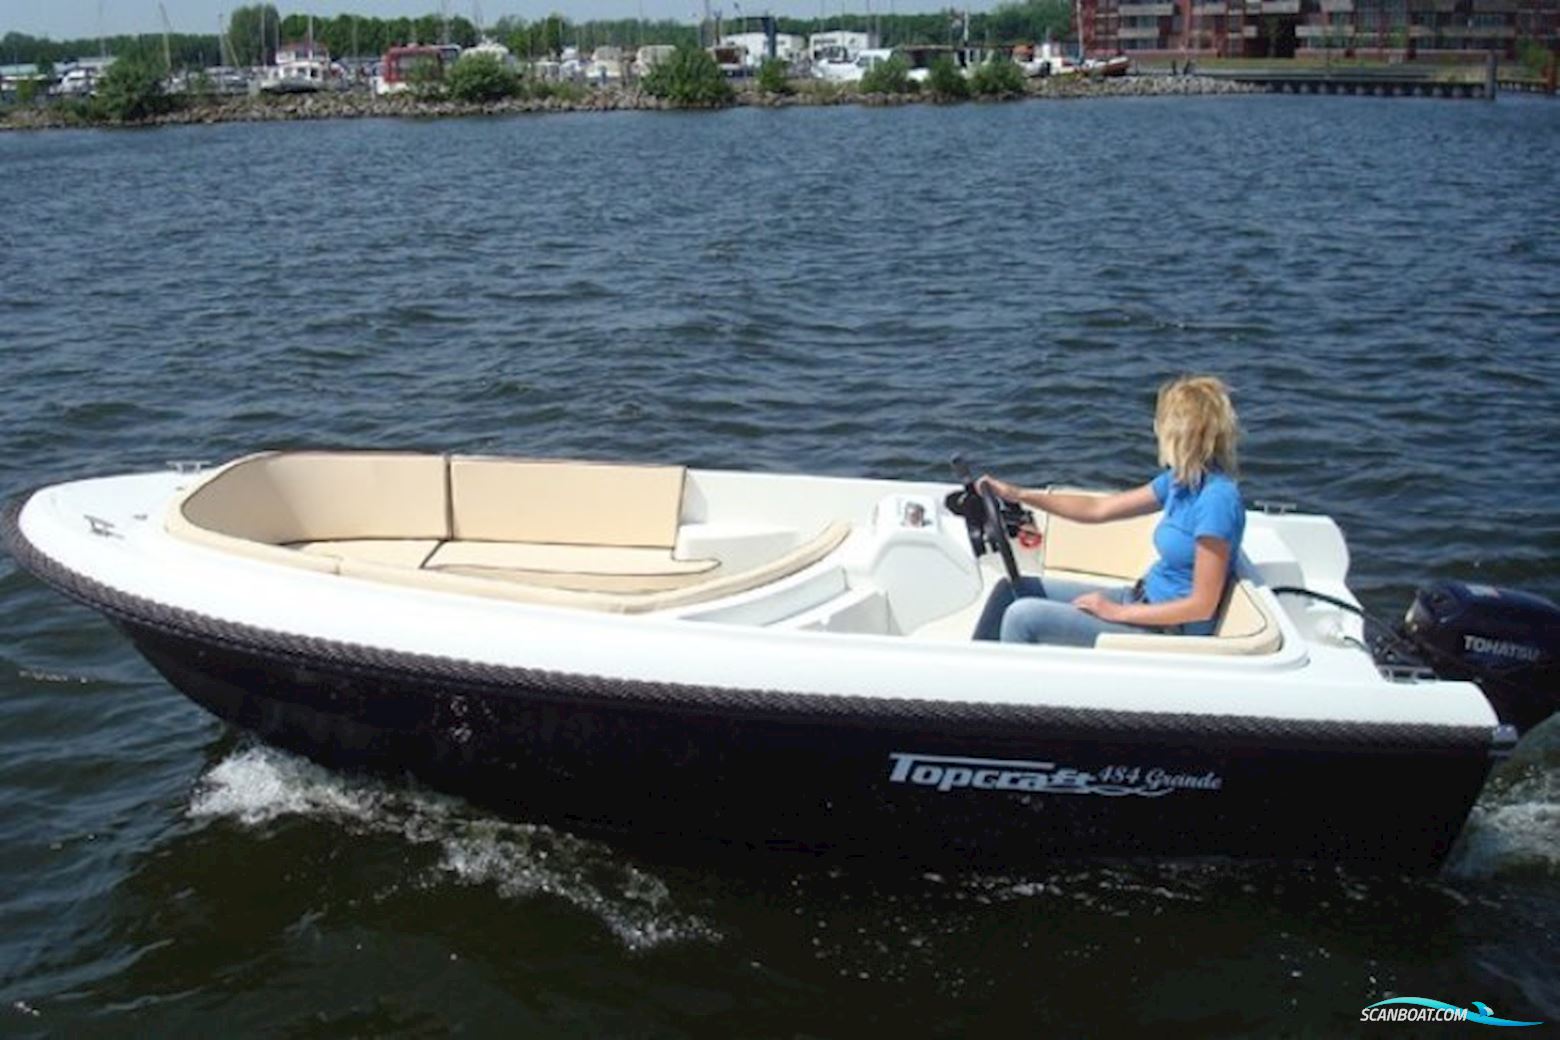 Topcraft 484 Grande Limited Motor boat 2024, The Netherlands